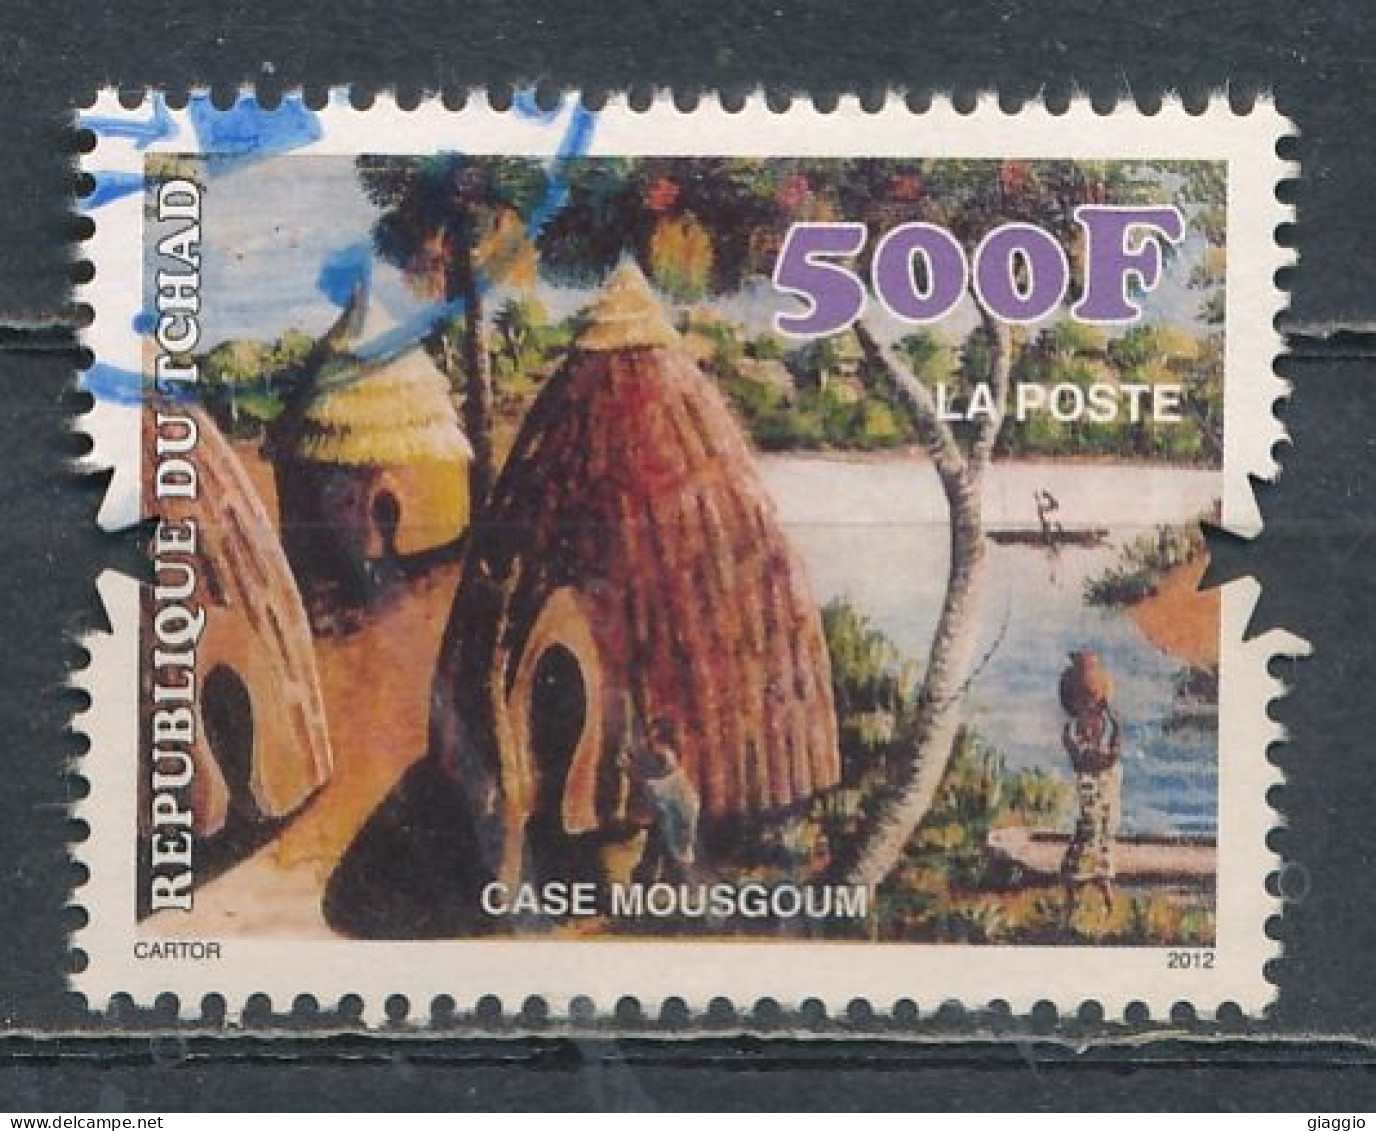 °°° TCHAD - CASE MOUSGOUM - 2012 °°° - Chad (1960-...)